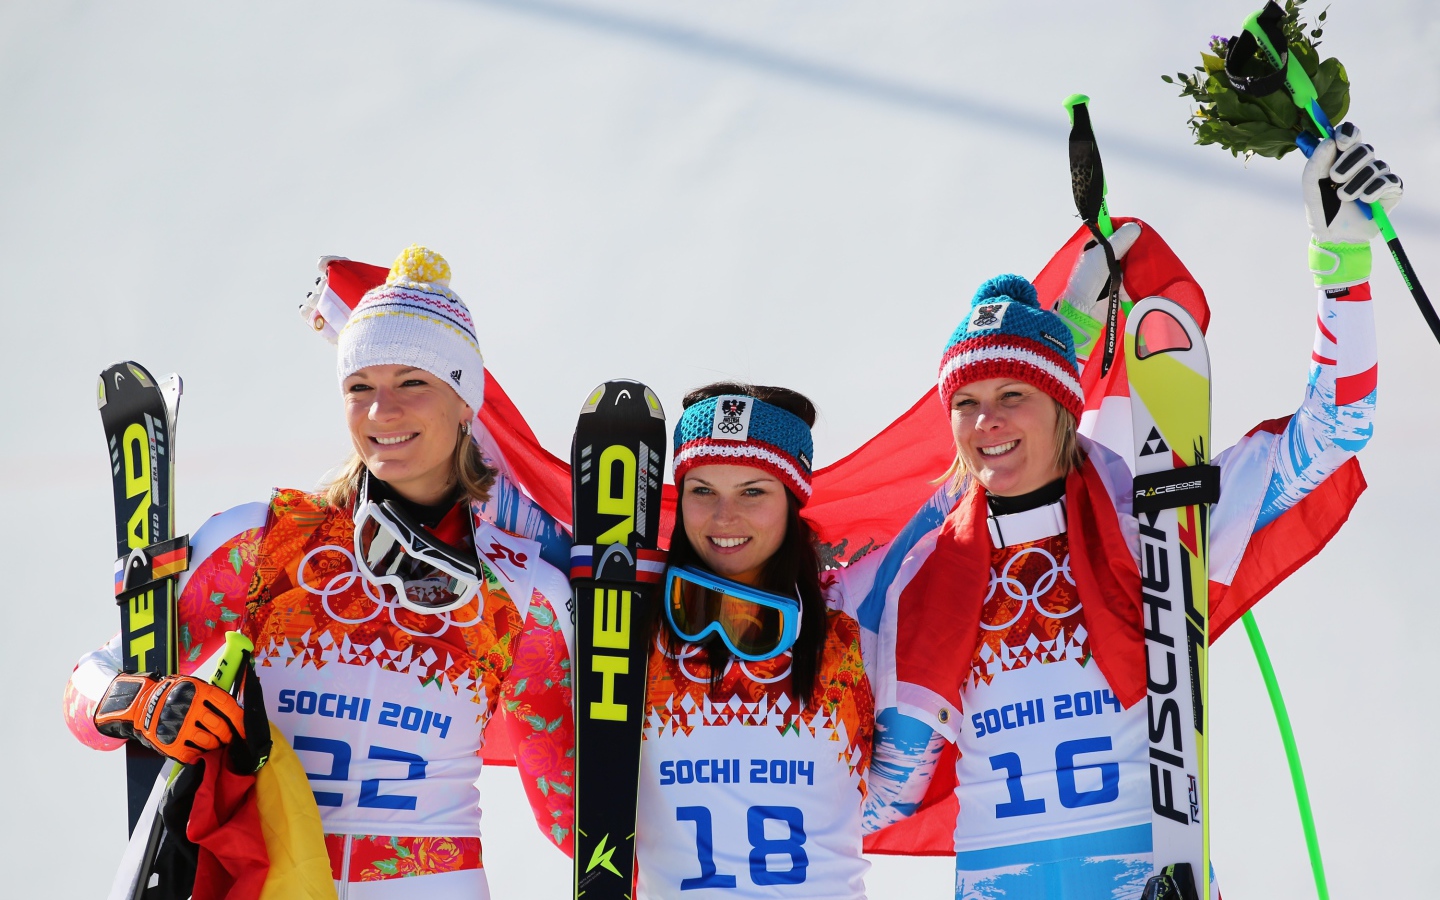 Австрийская лыжница Николь Хосп обладательница серебряной и бронзовой медали